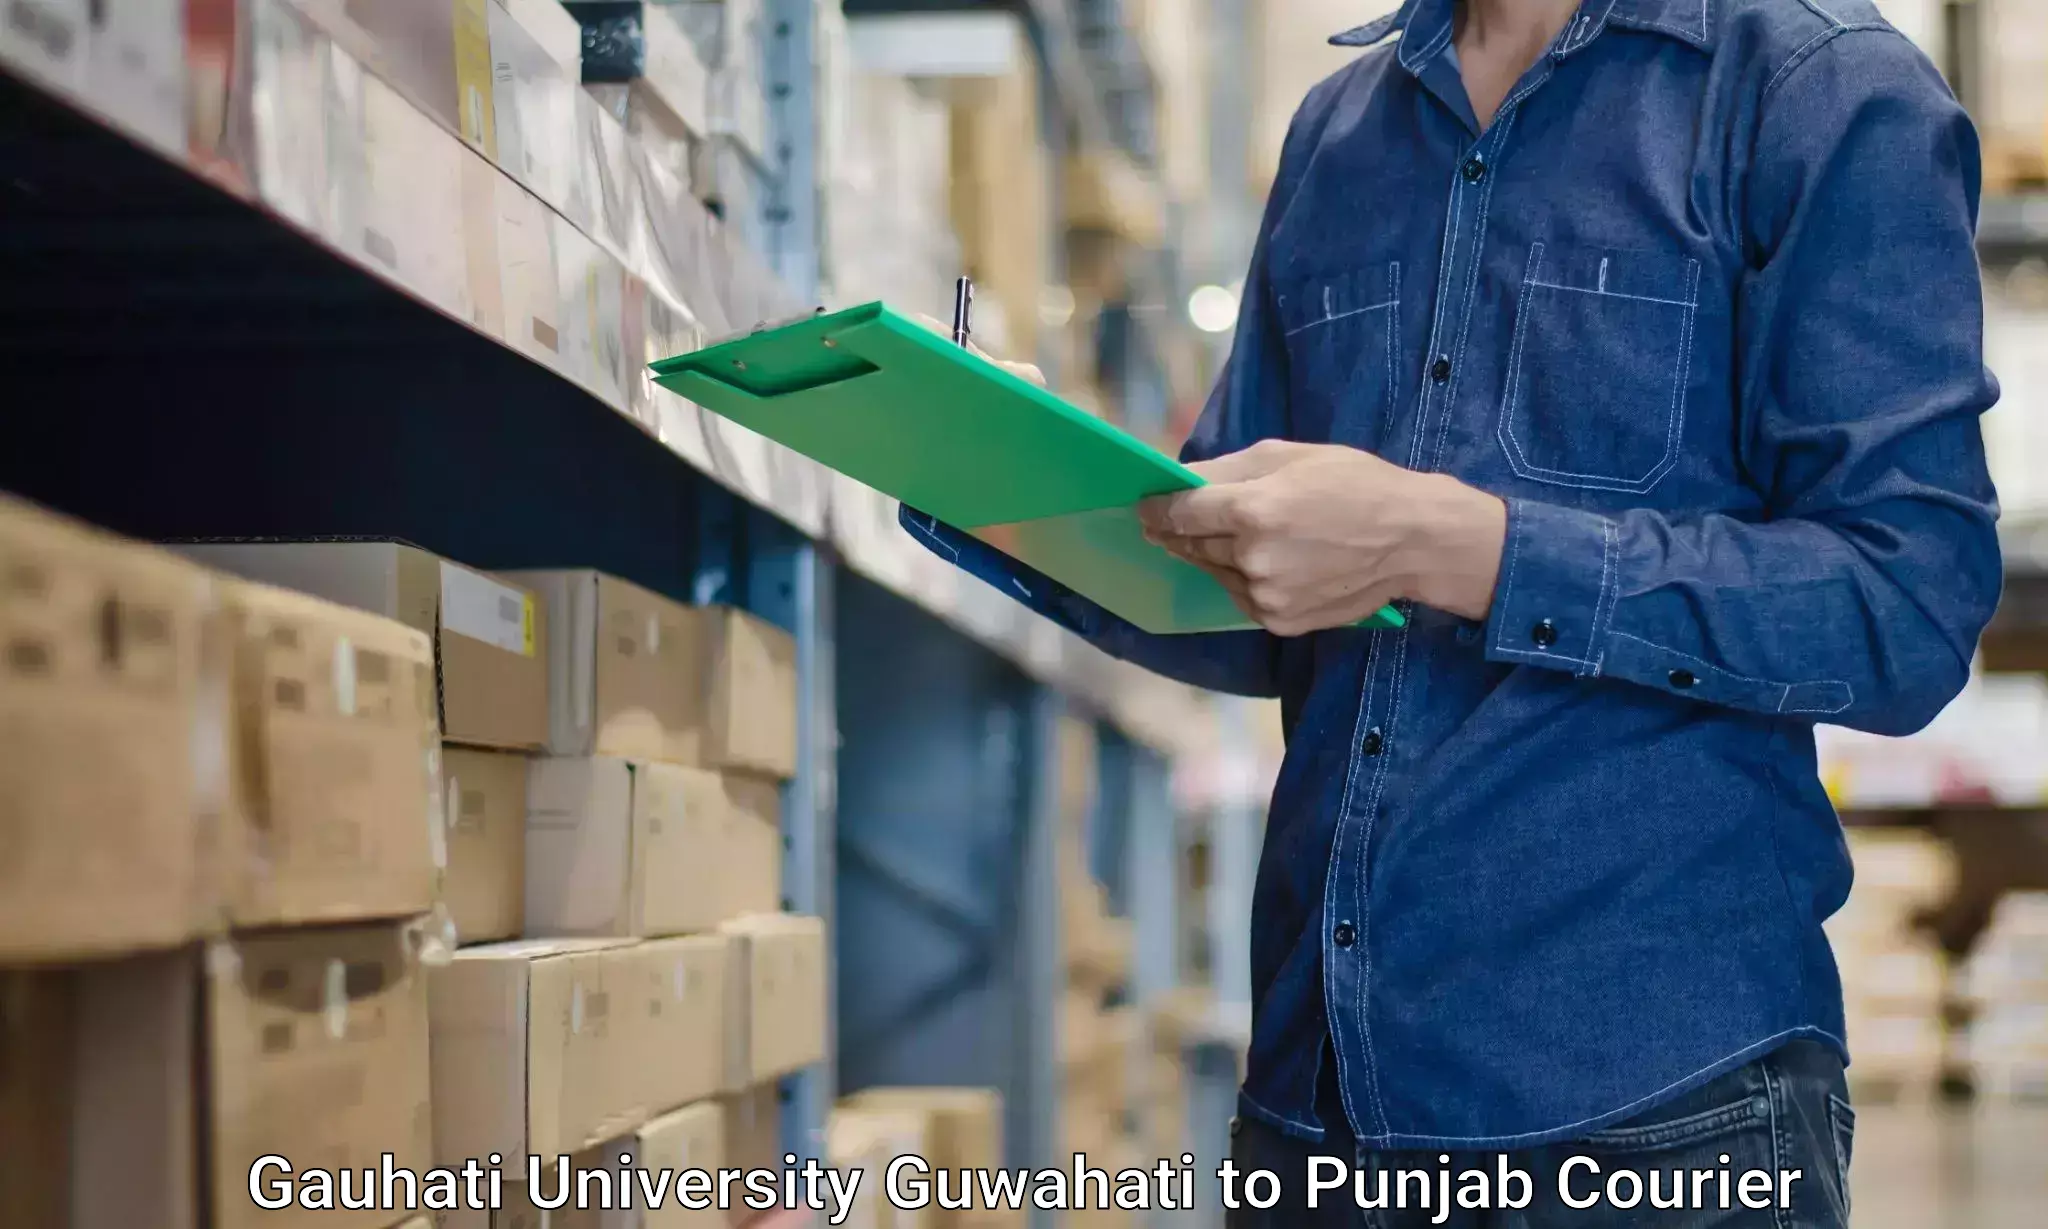 Furniture transport experts Gauhati University Guwahati to Punjab